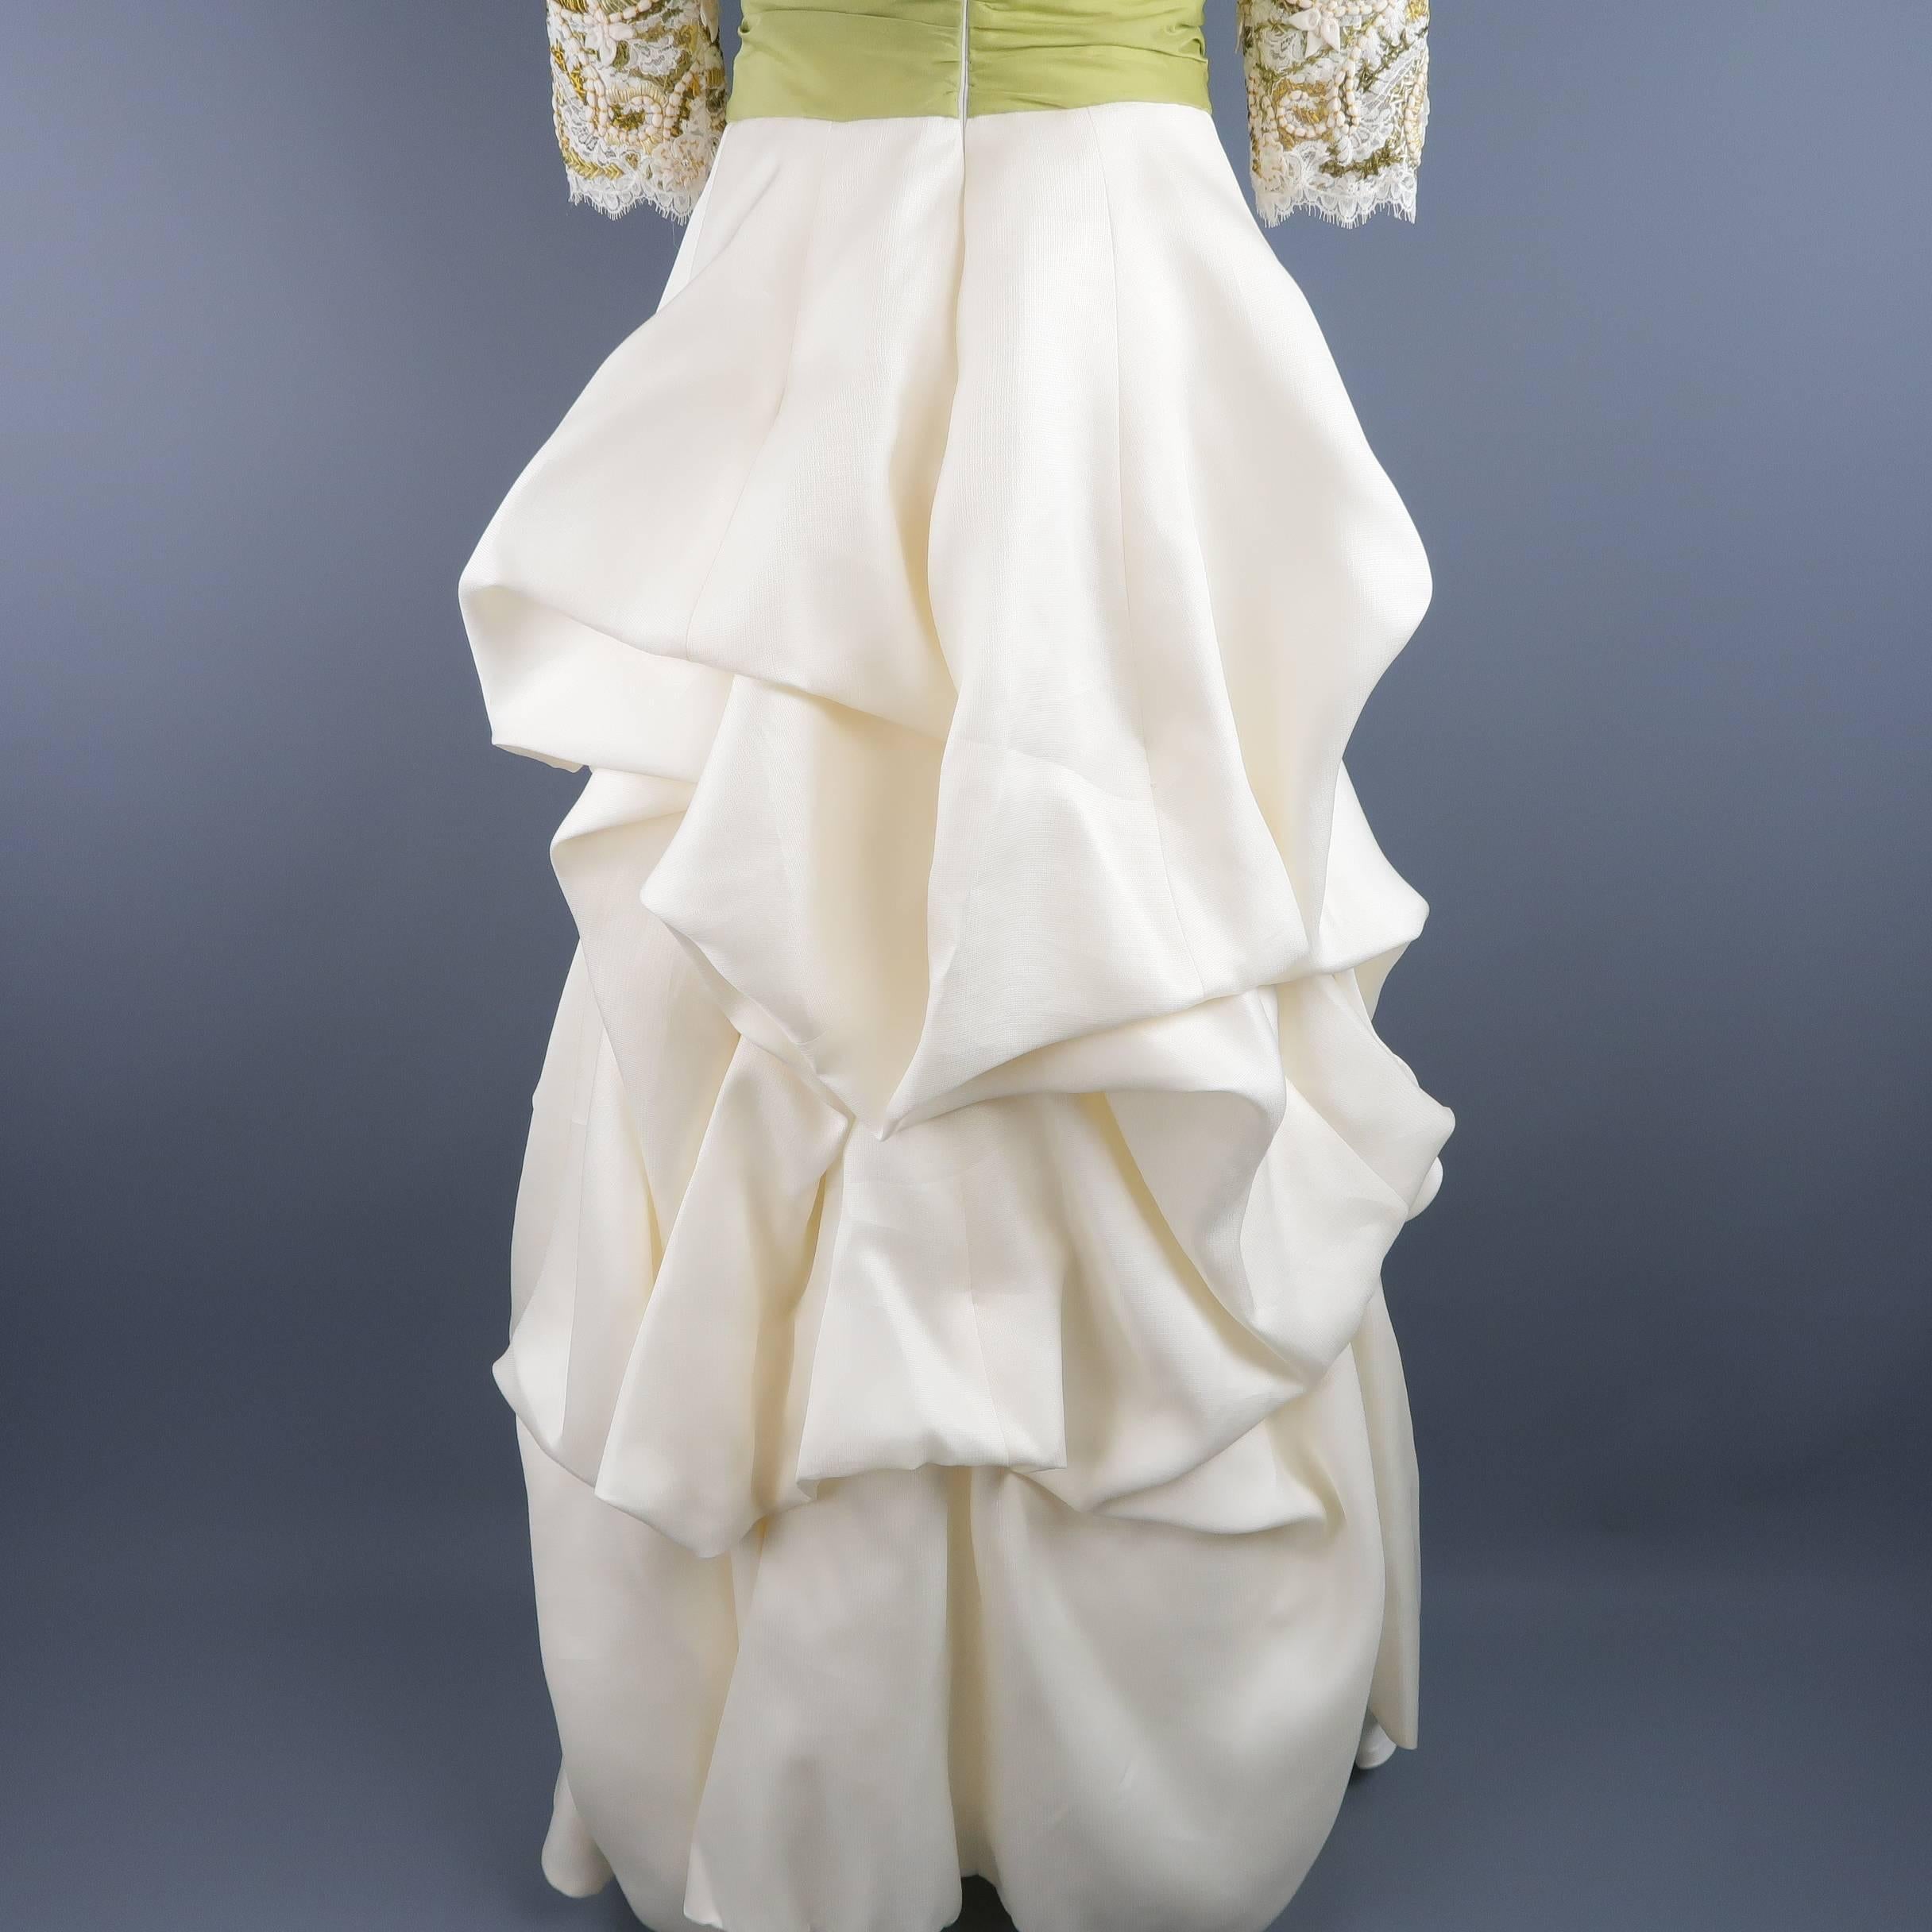 Monique Lhuillier Gown Dress Cream Gold Green Lace Bodice Bolero 2